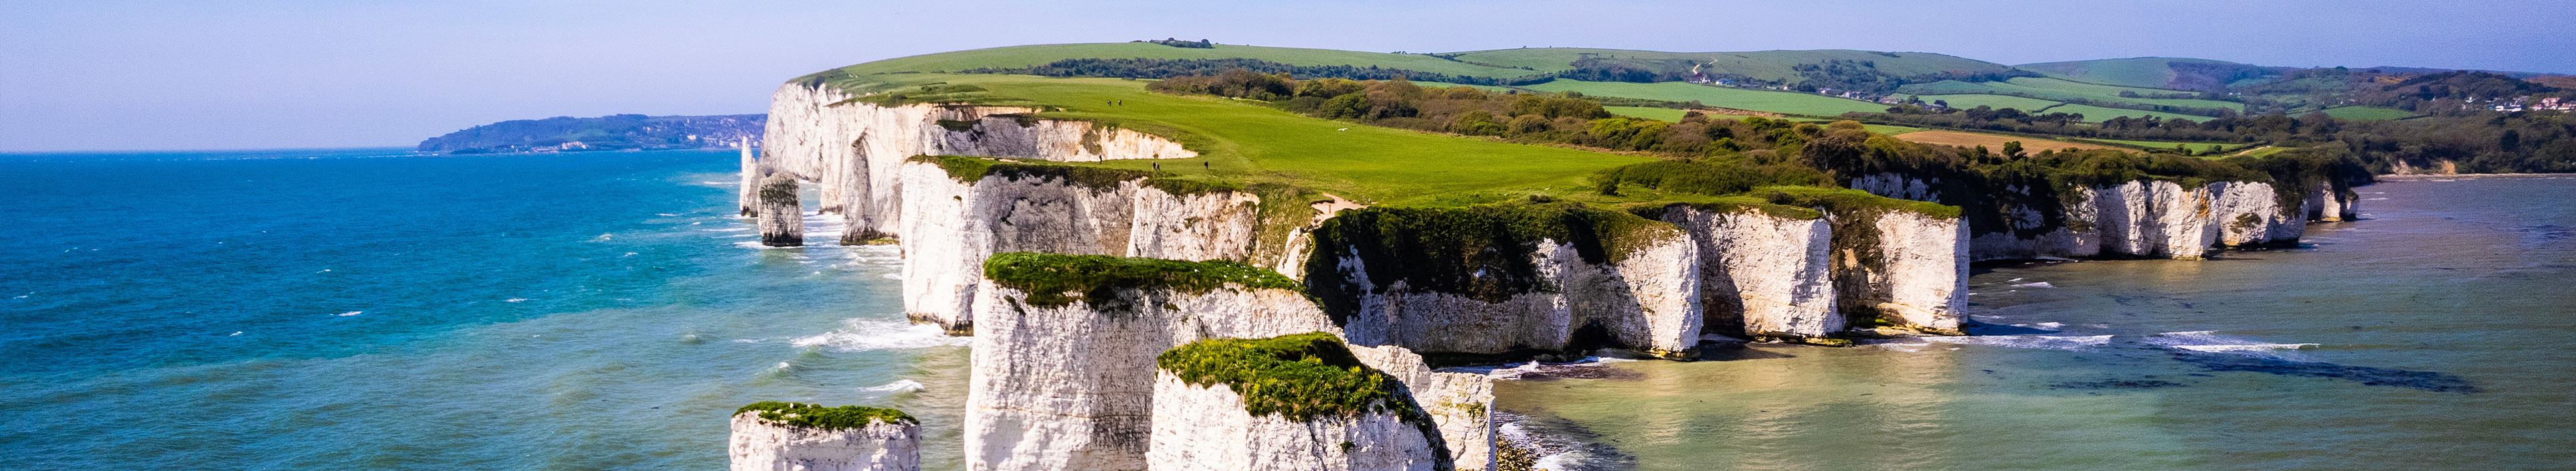 Die Limestone Klippen in Old Harry Rocks in Dorset während einer Rundreise in Großbritannien.